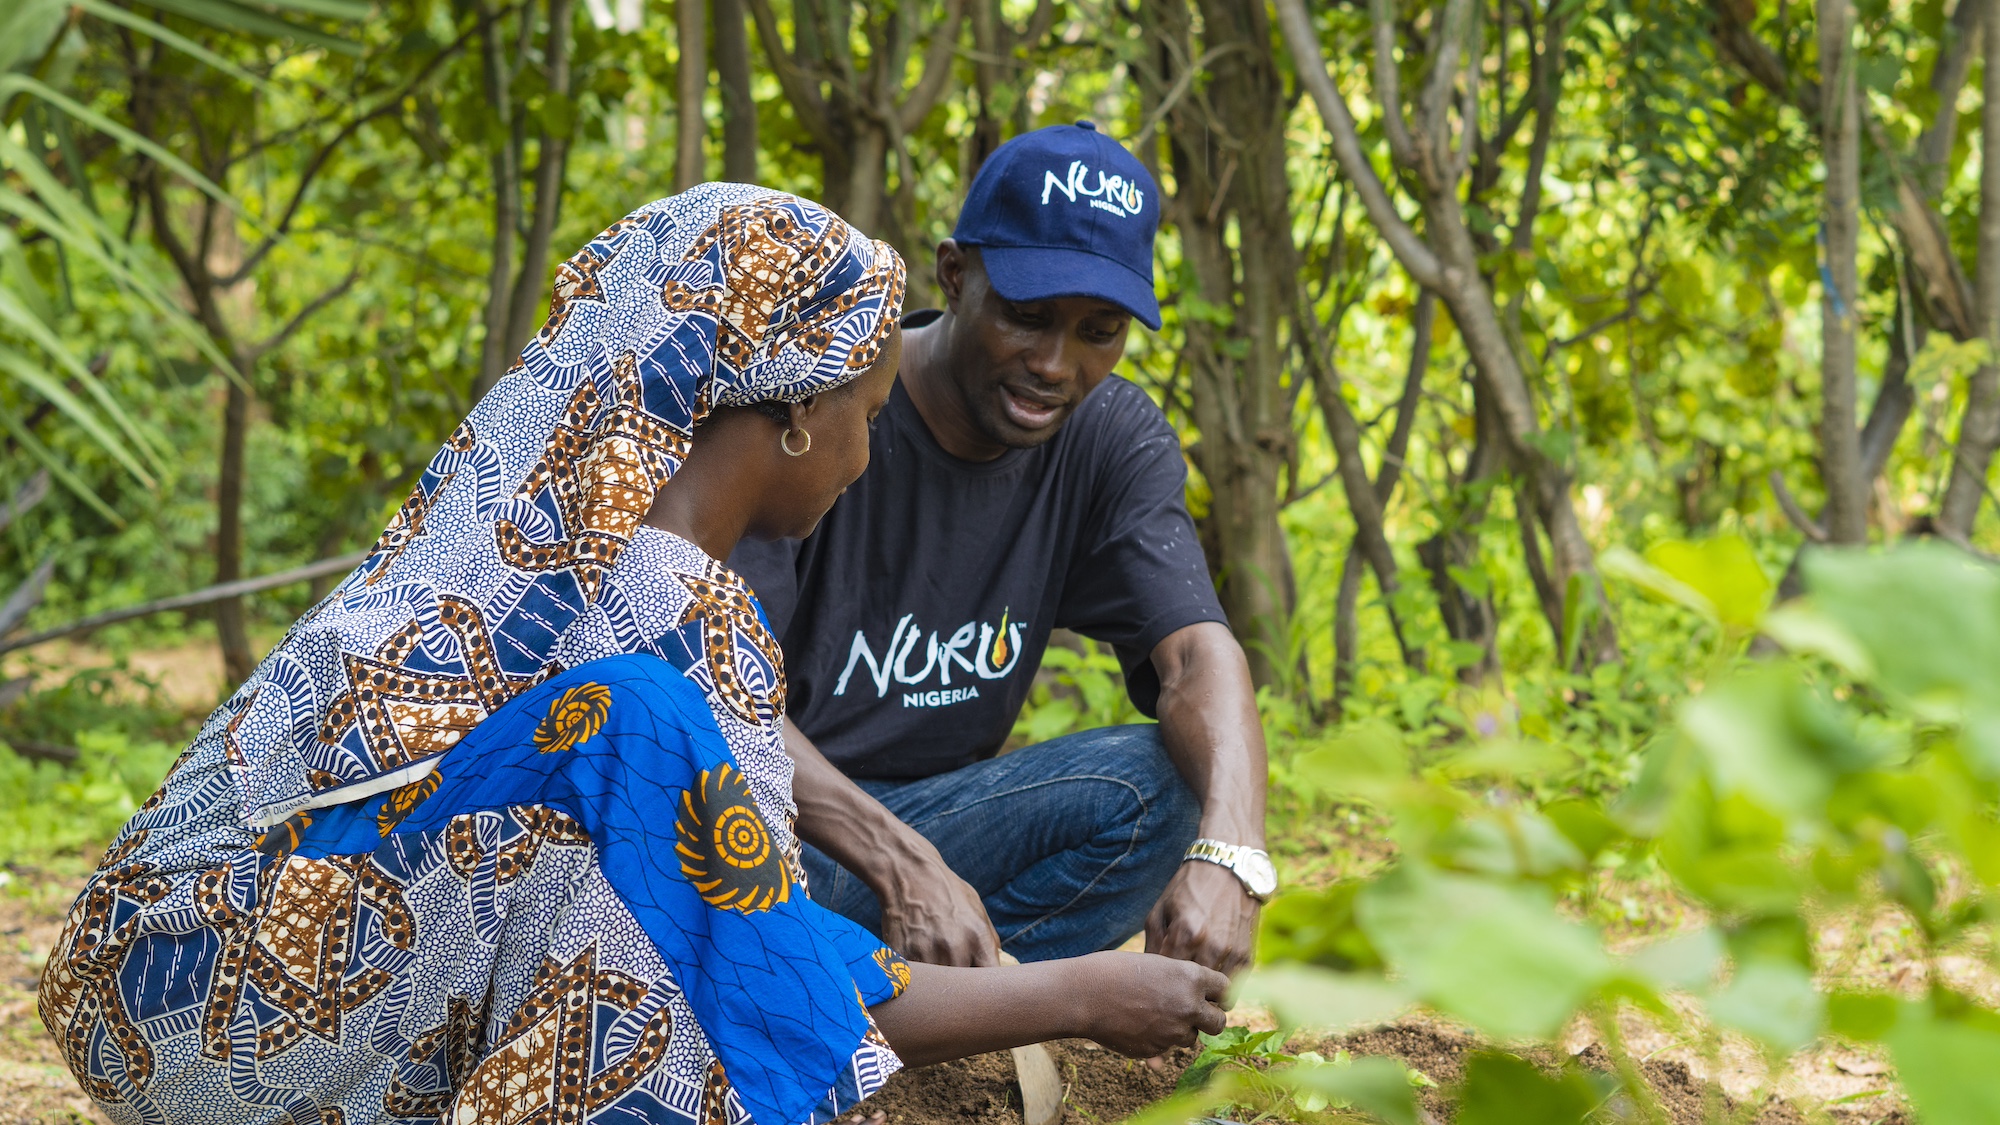 Nuru Nigeria Builds Resilience in Northeast Nigeria